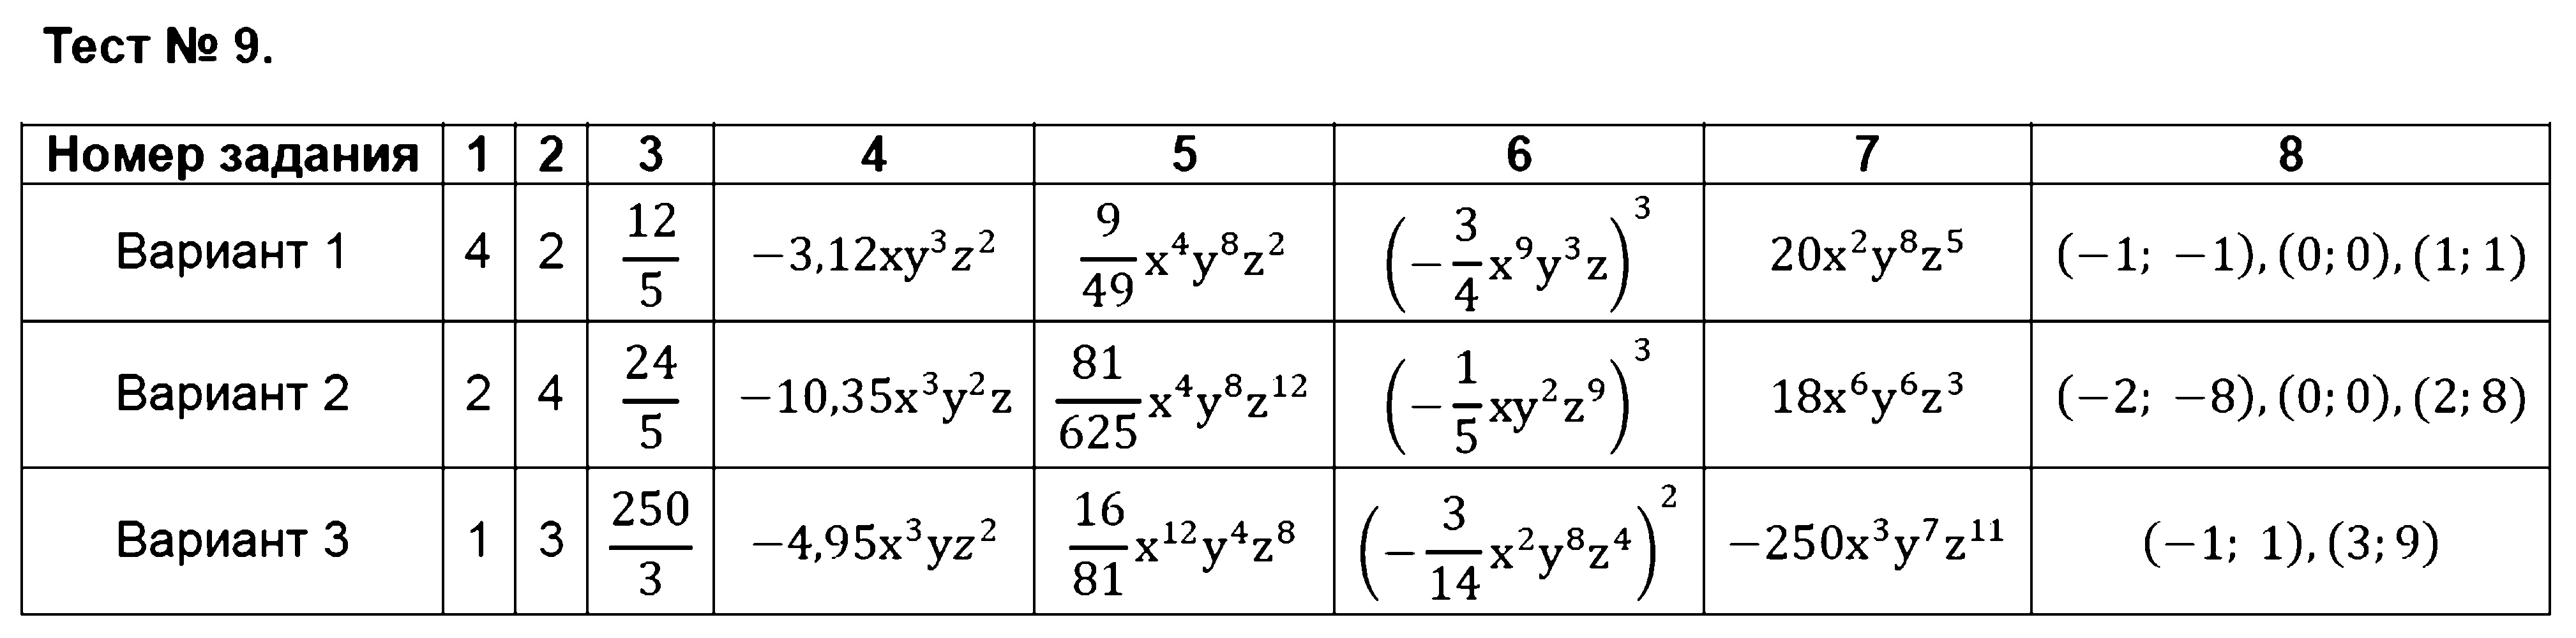 ГДЗ Алгебра 7 класс - Тест 9